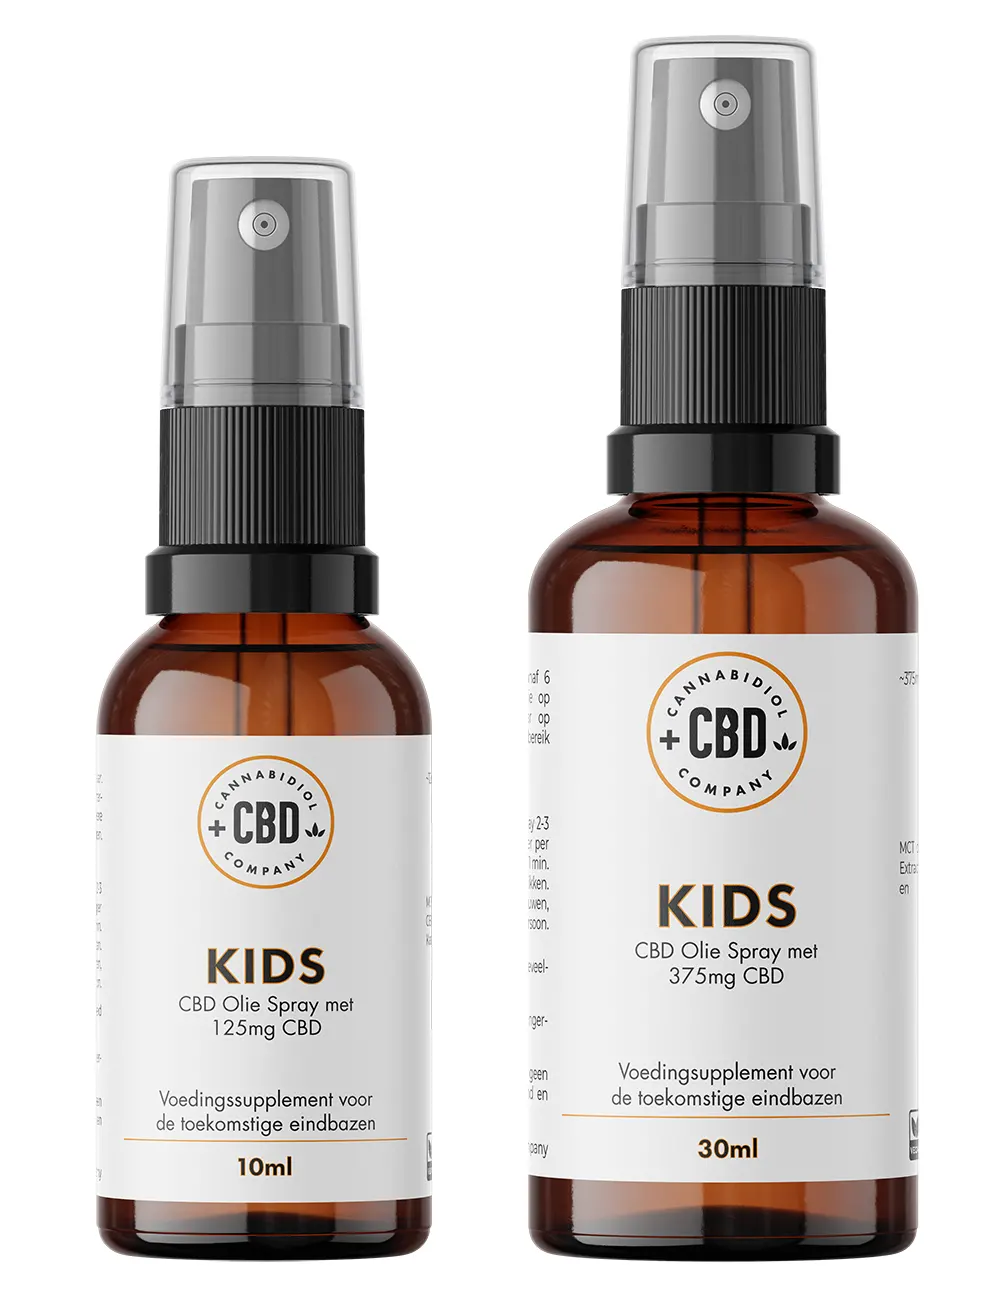 Kids CBD Spray, cbd supplement voor kinderen